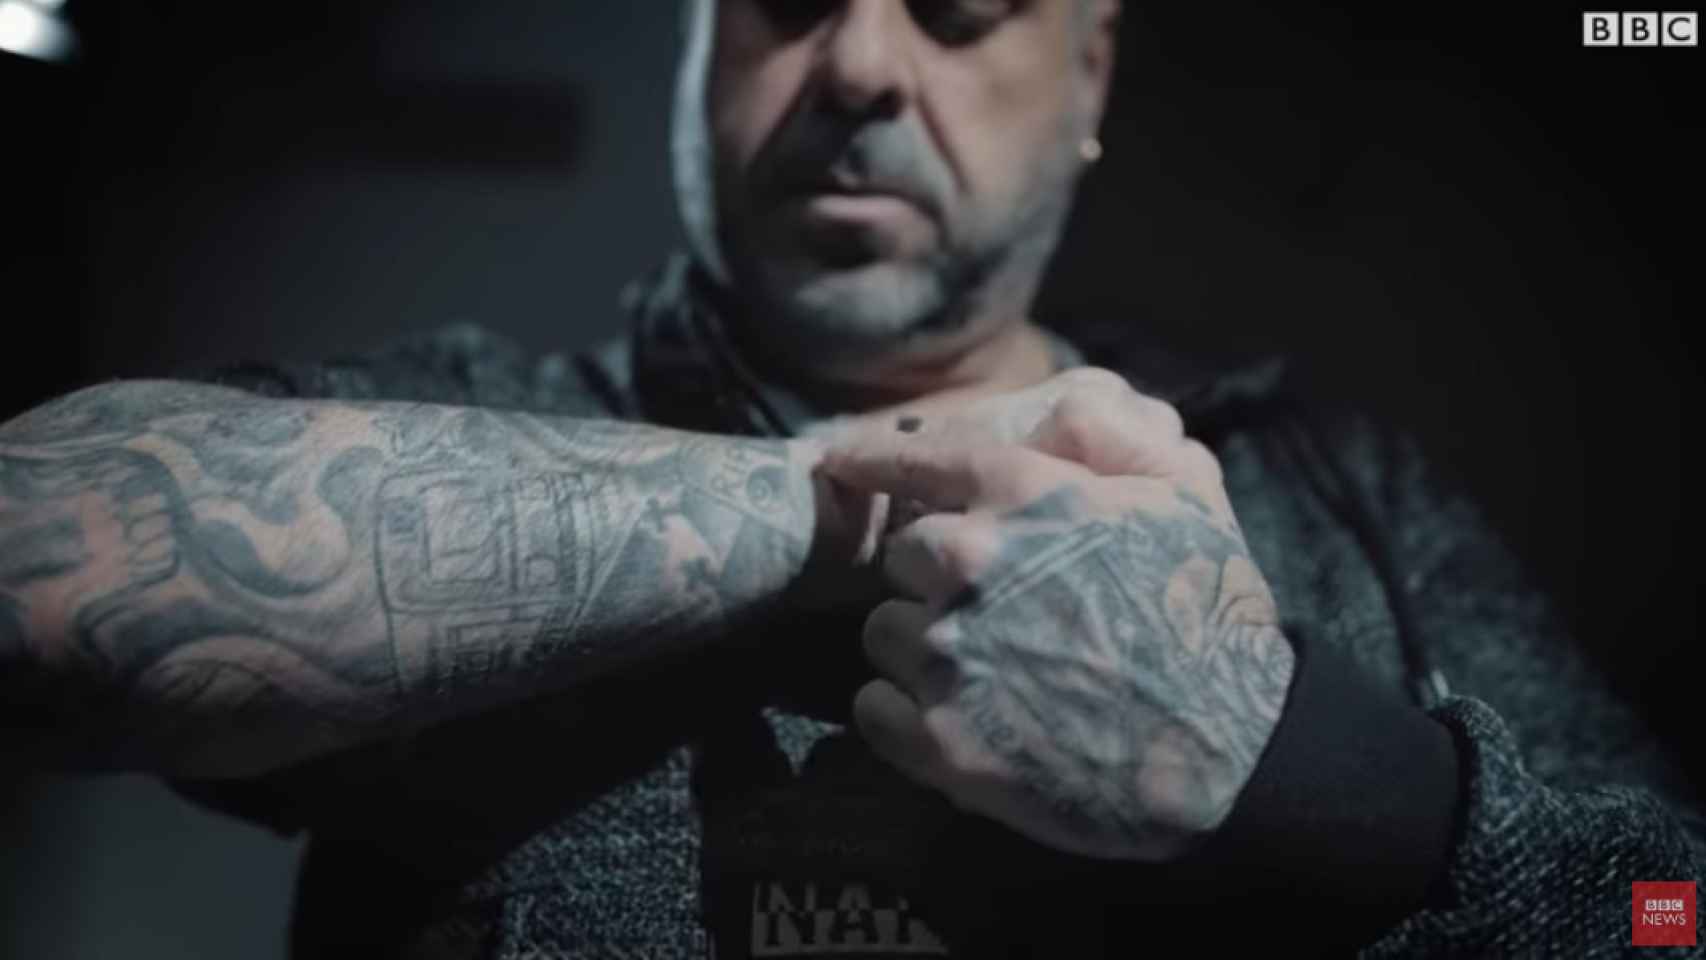 Captura del vídeo en el que Javier García explica su historia como conductor de metro y los ocho suicidios / BBC MUNDO